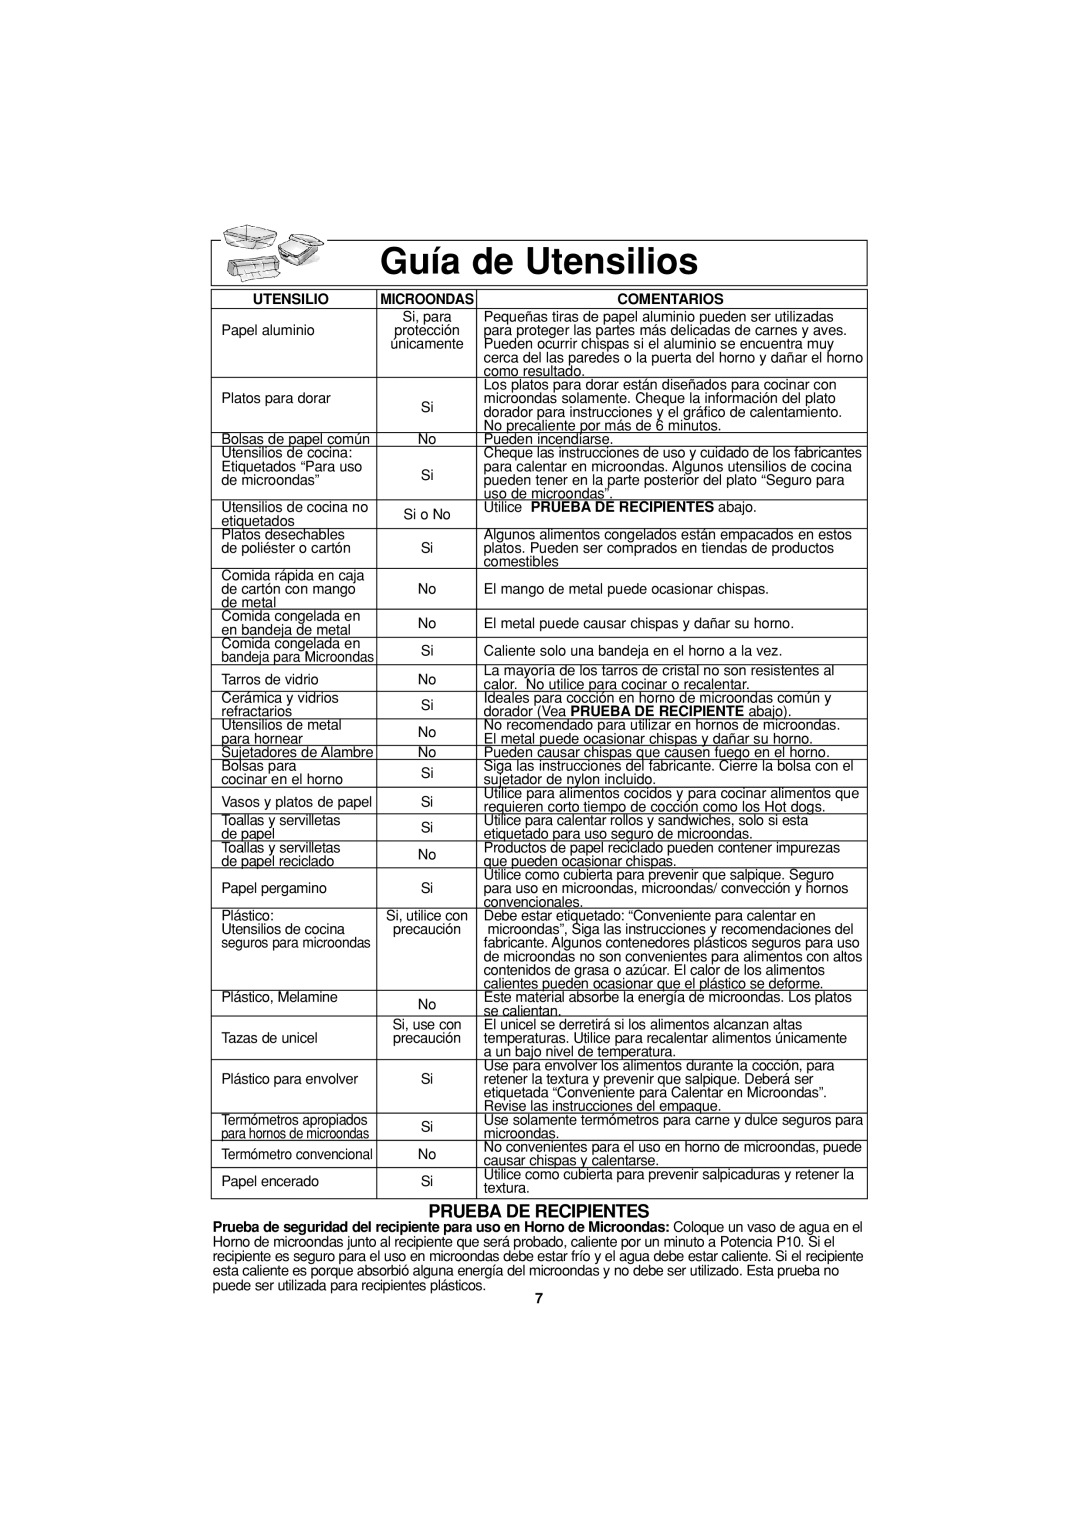 Panasonic NN-S334 important safety instructions Guía de Utensilios, Prueba De Recipientes 